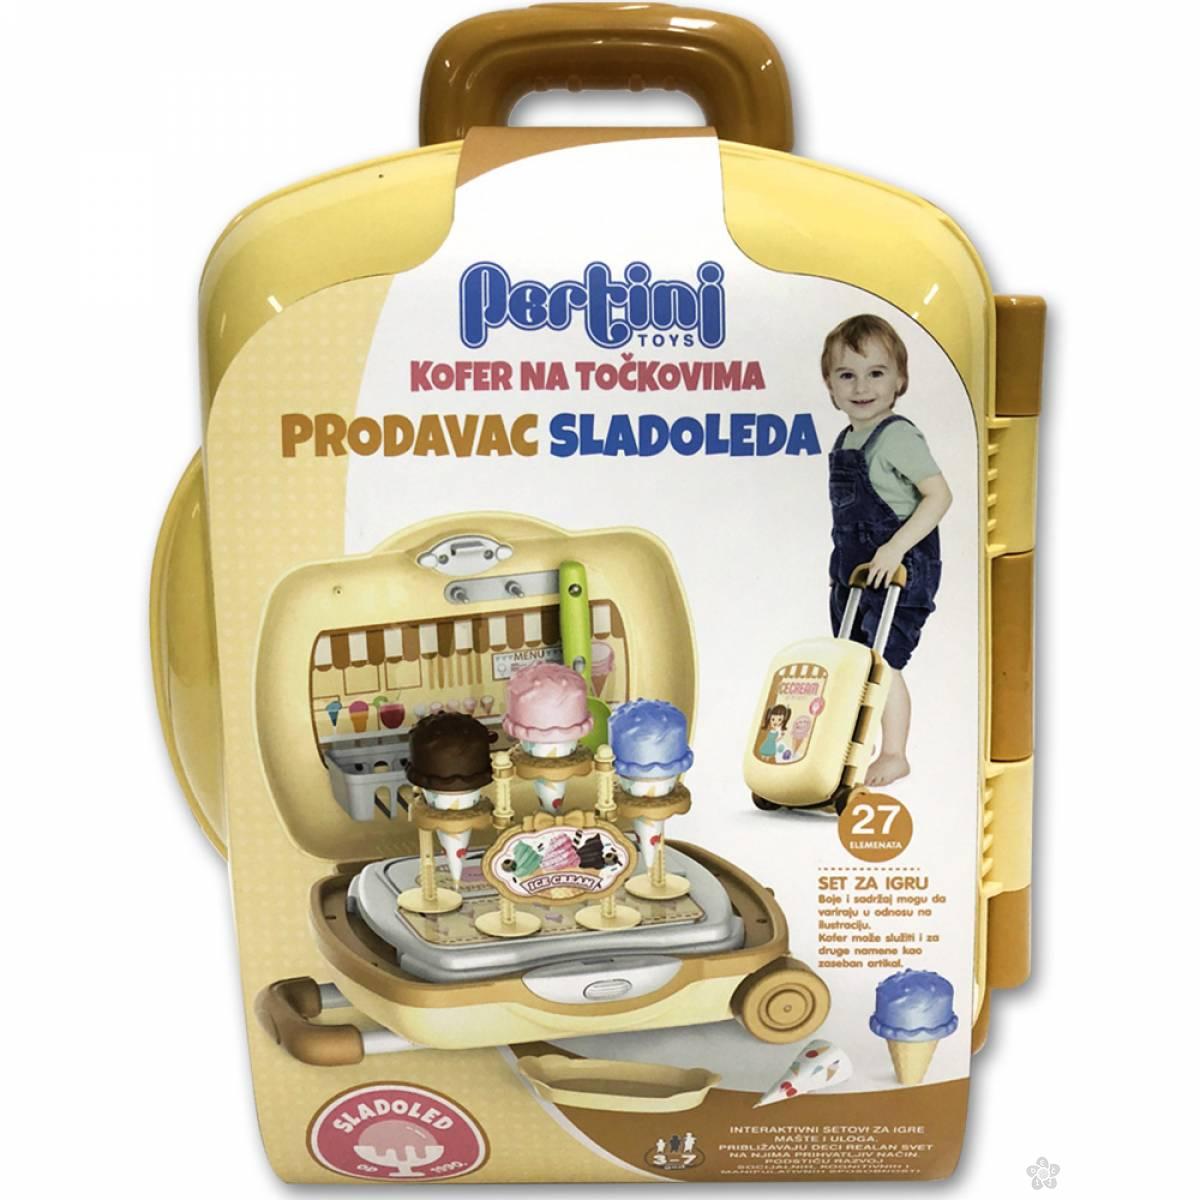 Kofer set Prodavac sladoleda P-0400 